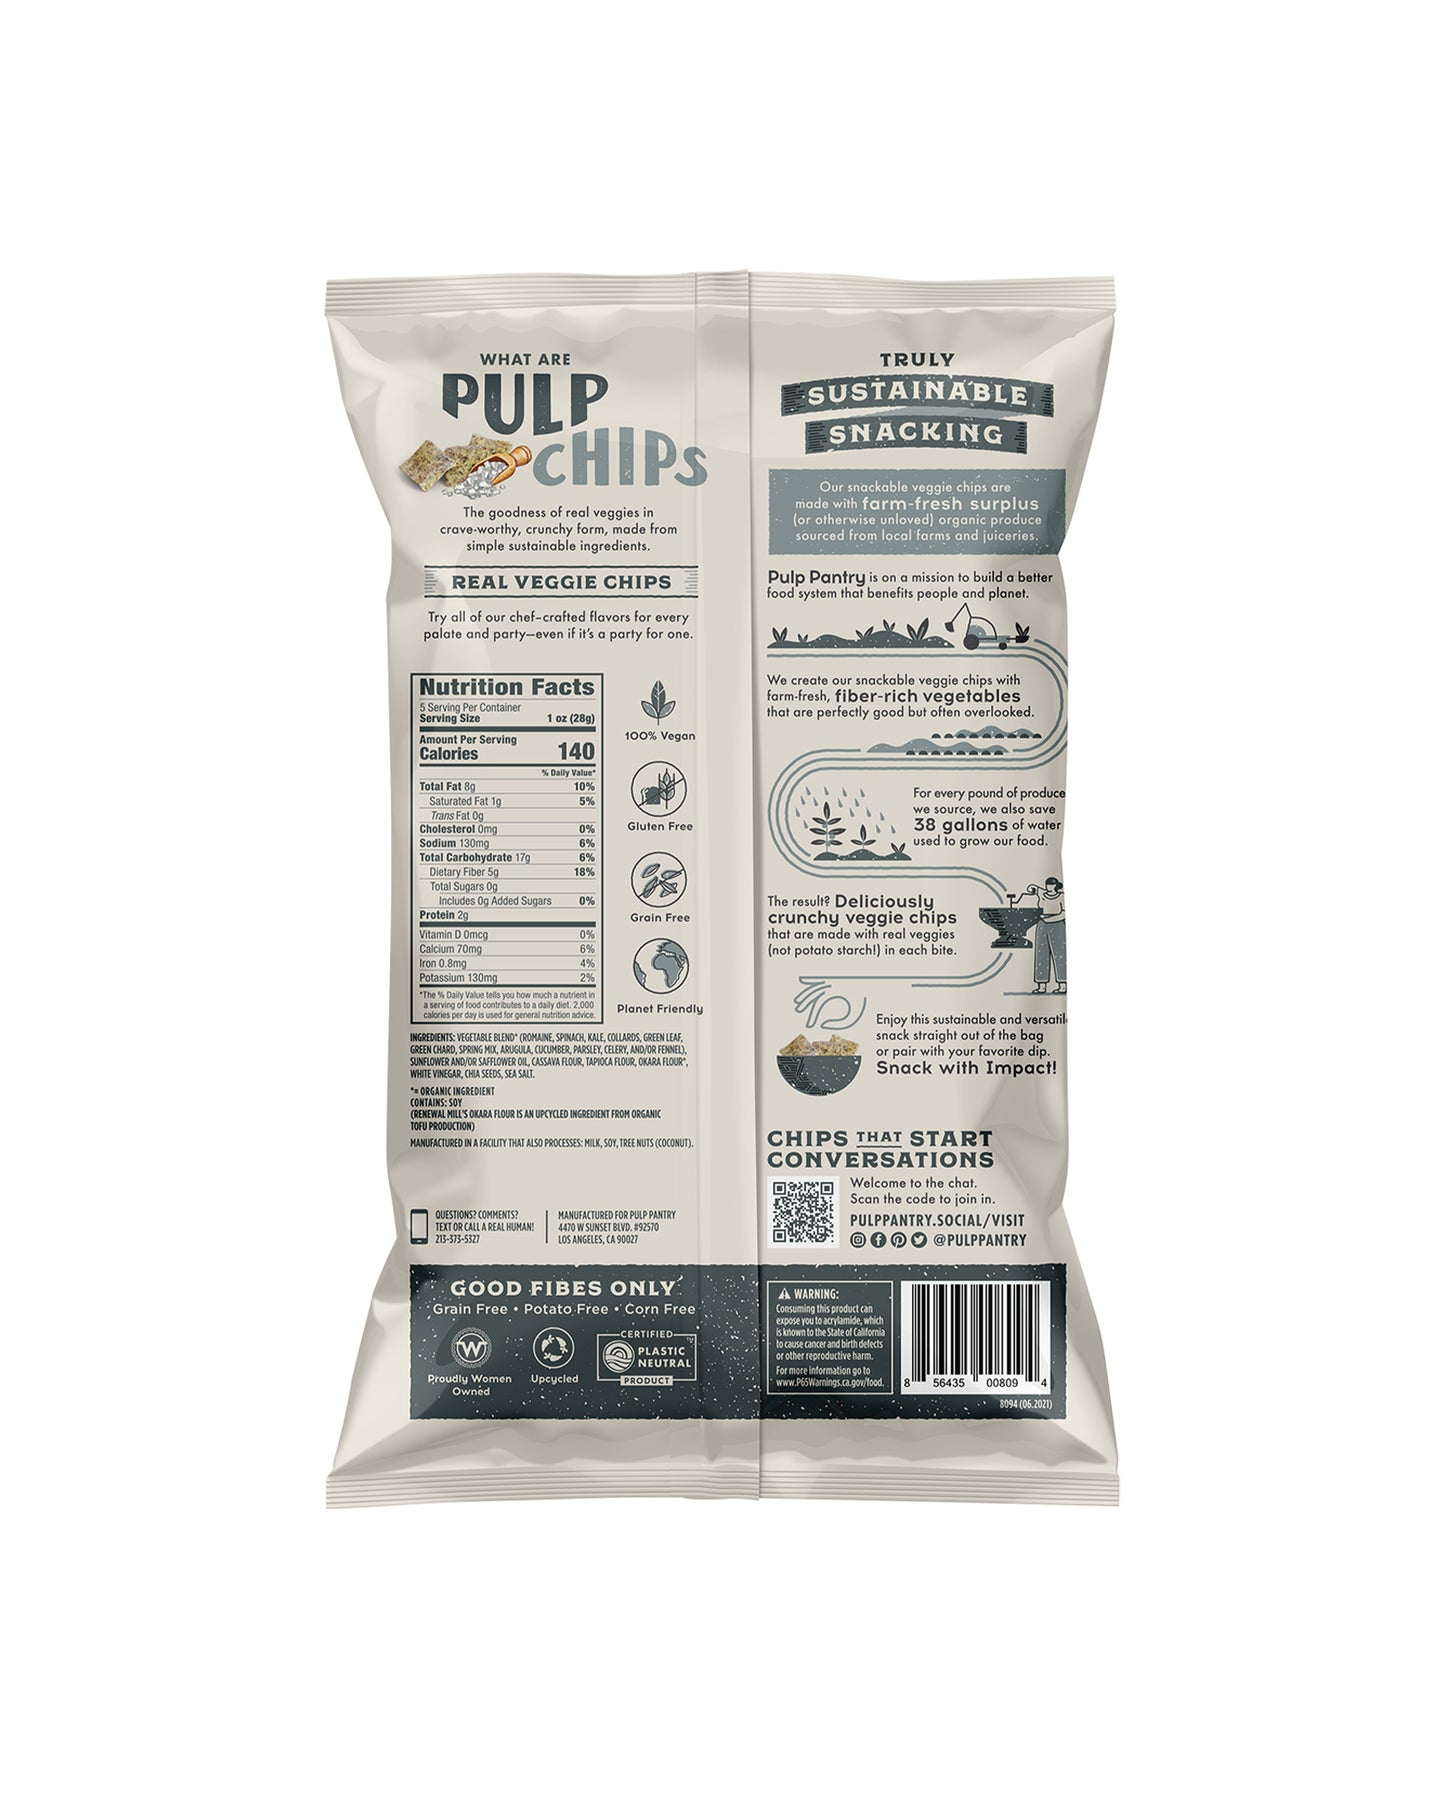 Sea Salt Veggie Pulp Chips